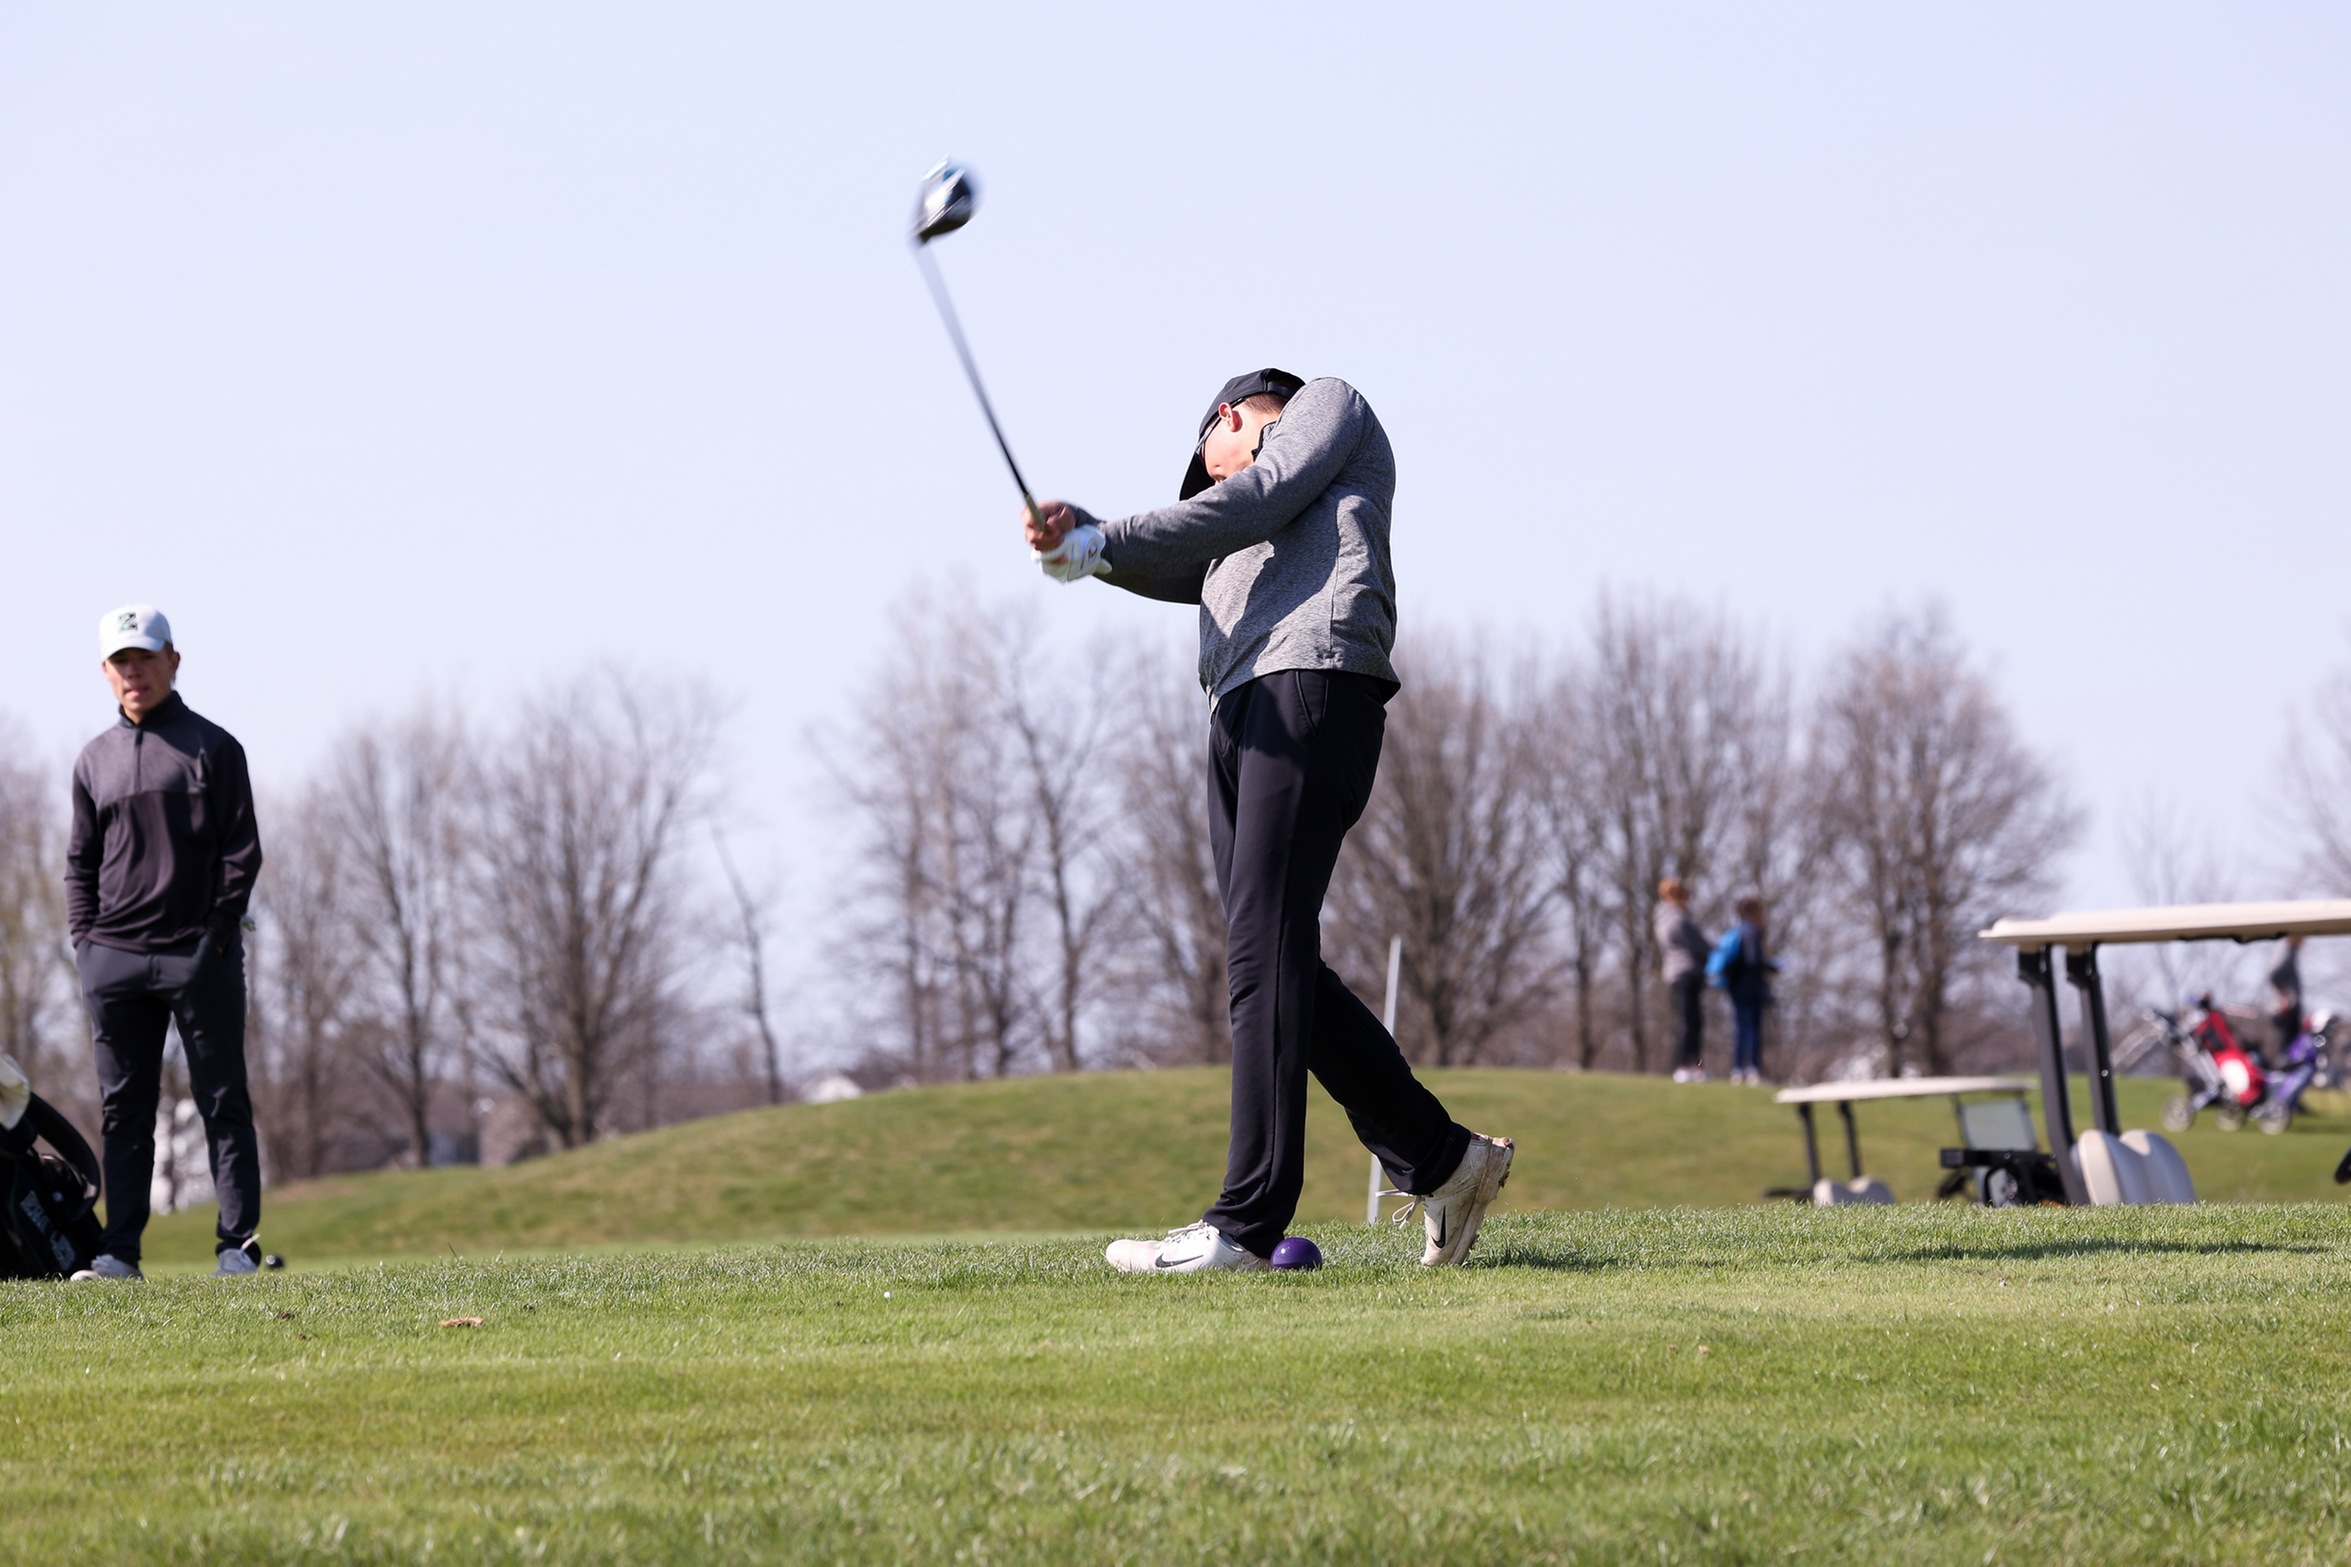 Golf Places 13th in Ulen Invite